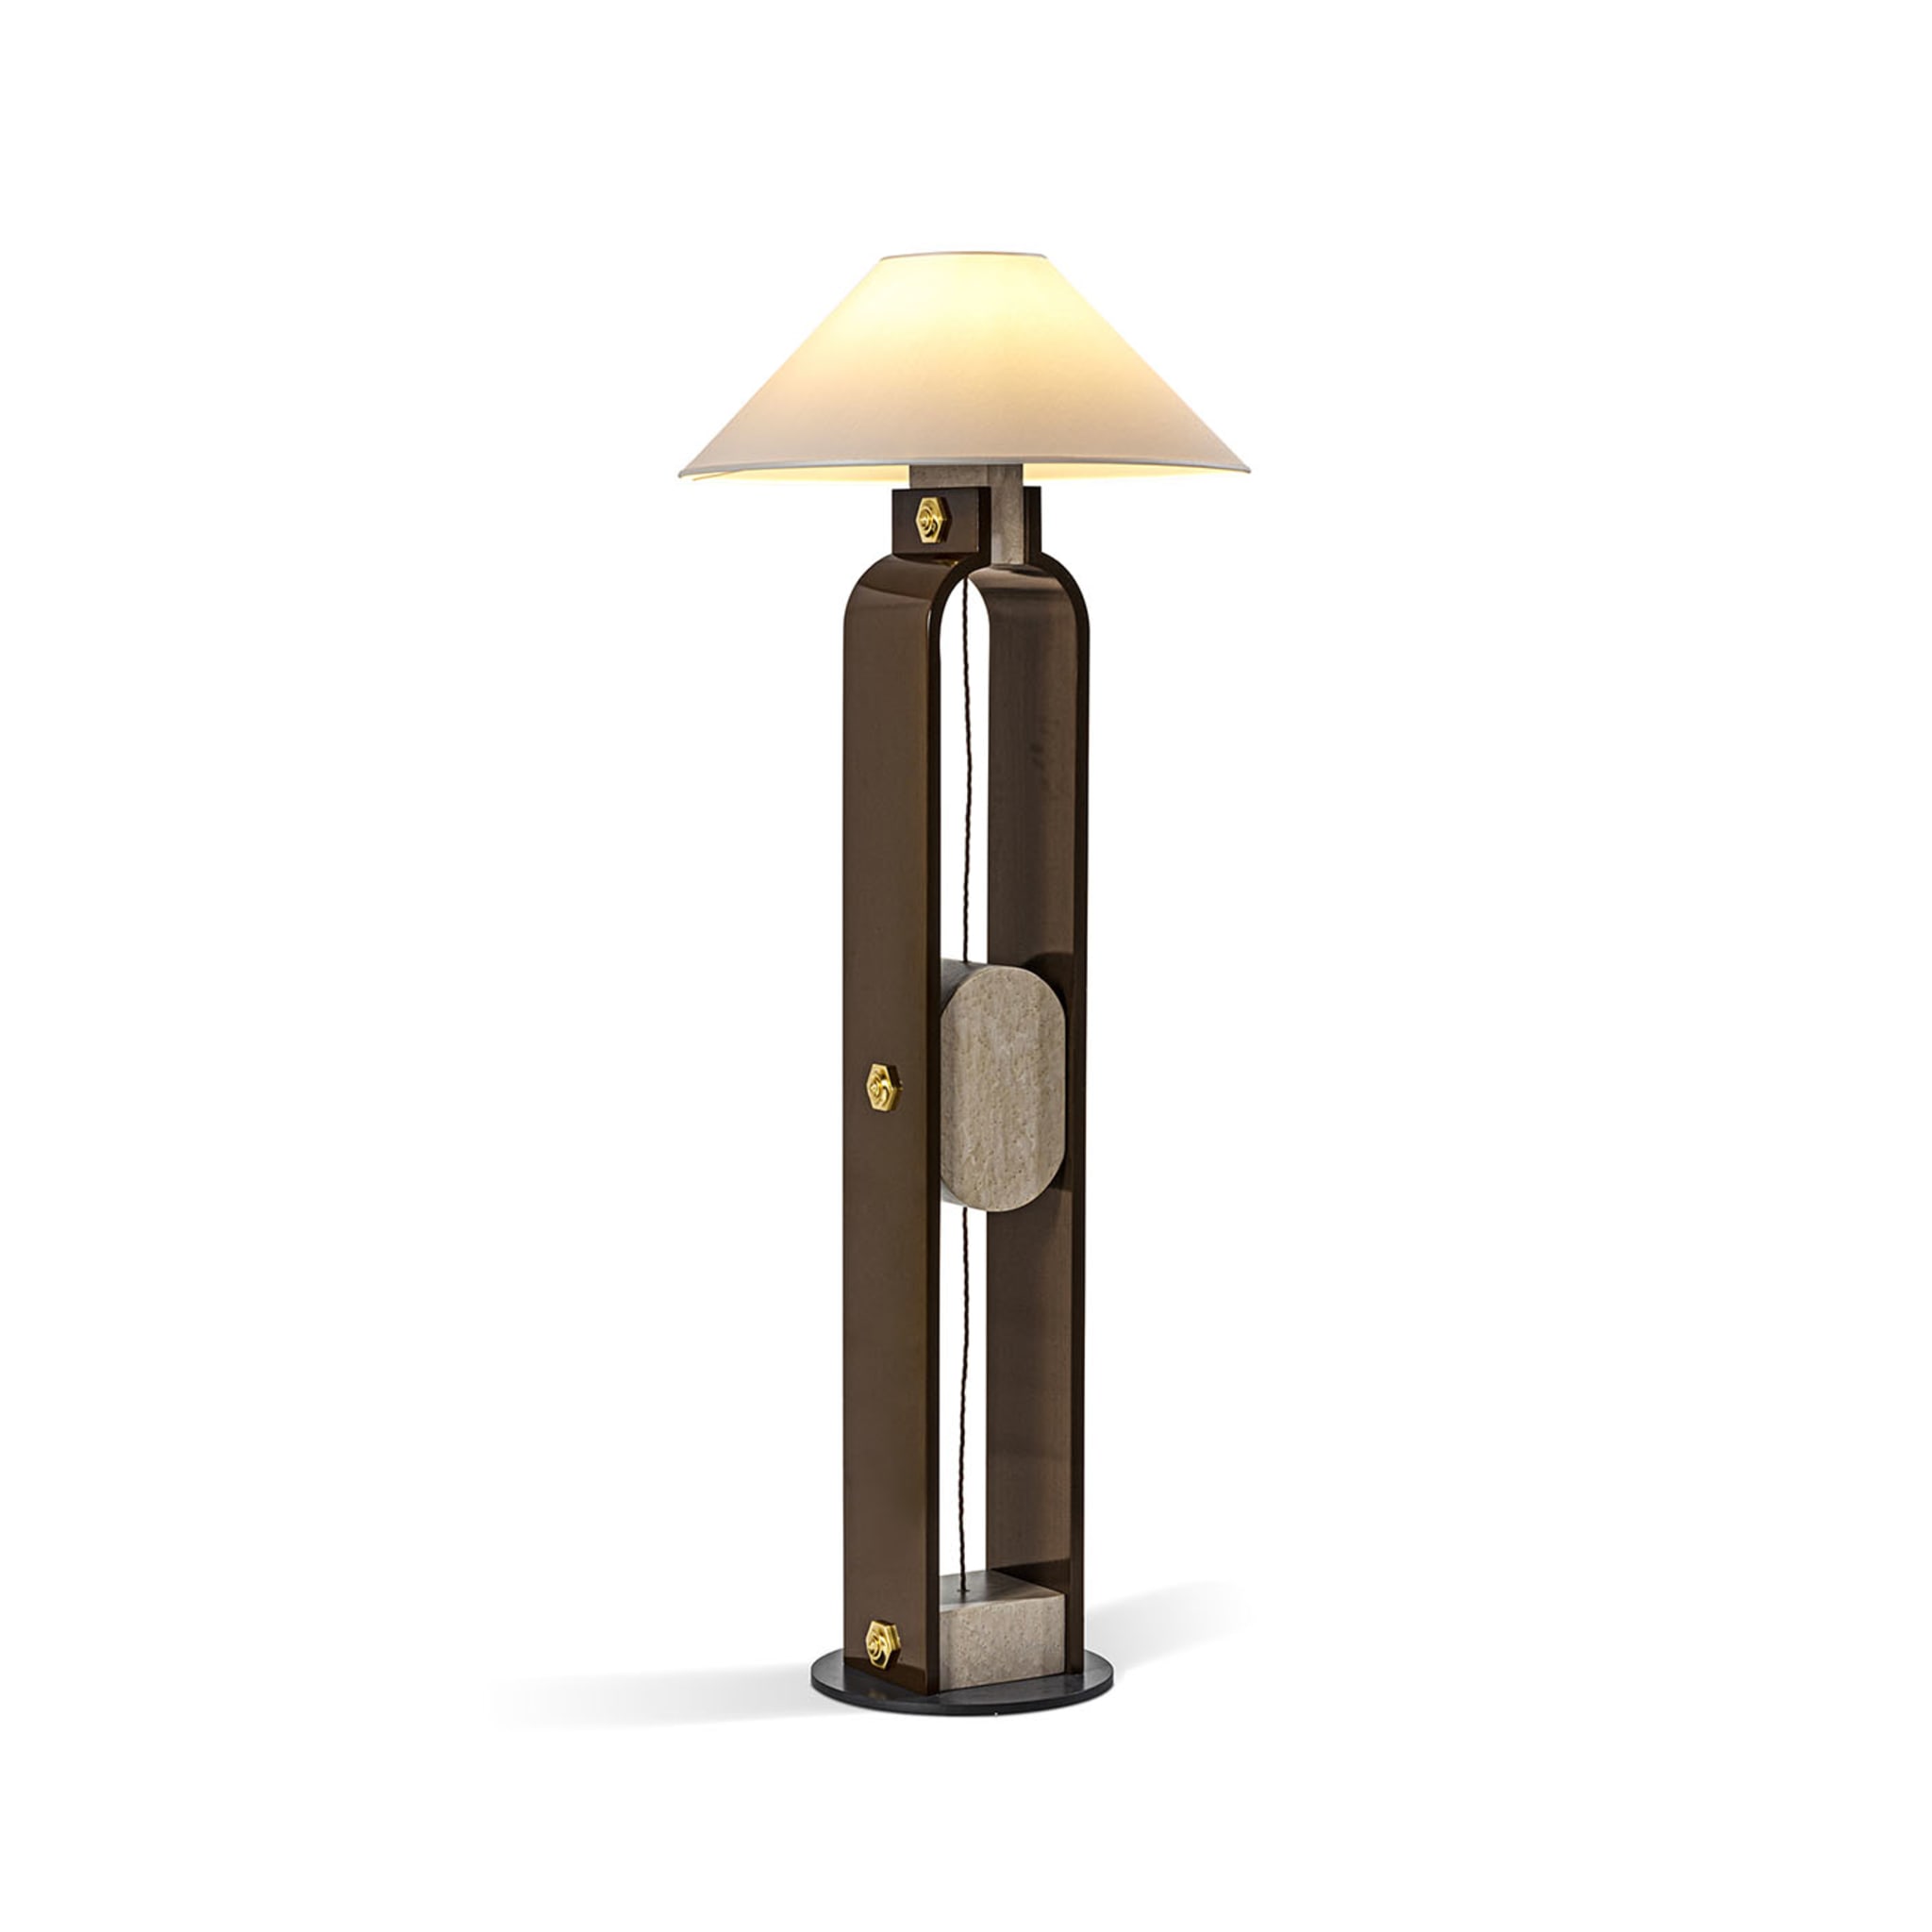 Wooden Floor Lamp - Alternative view 1